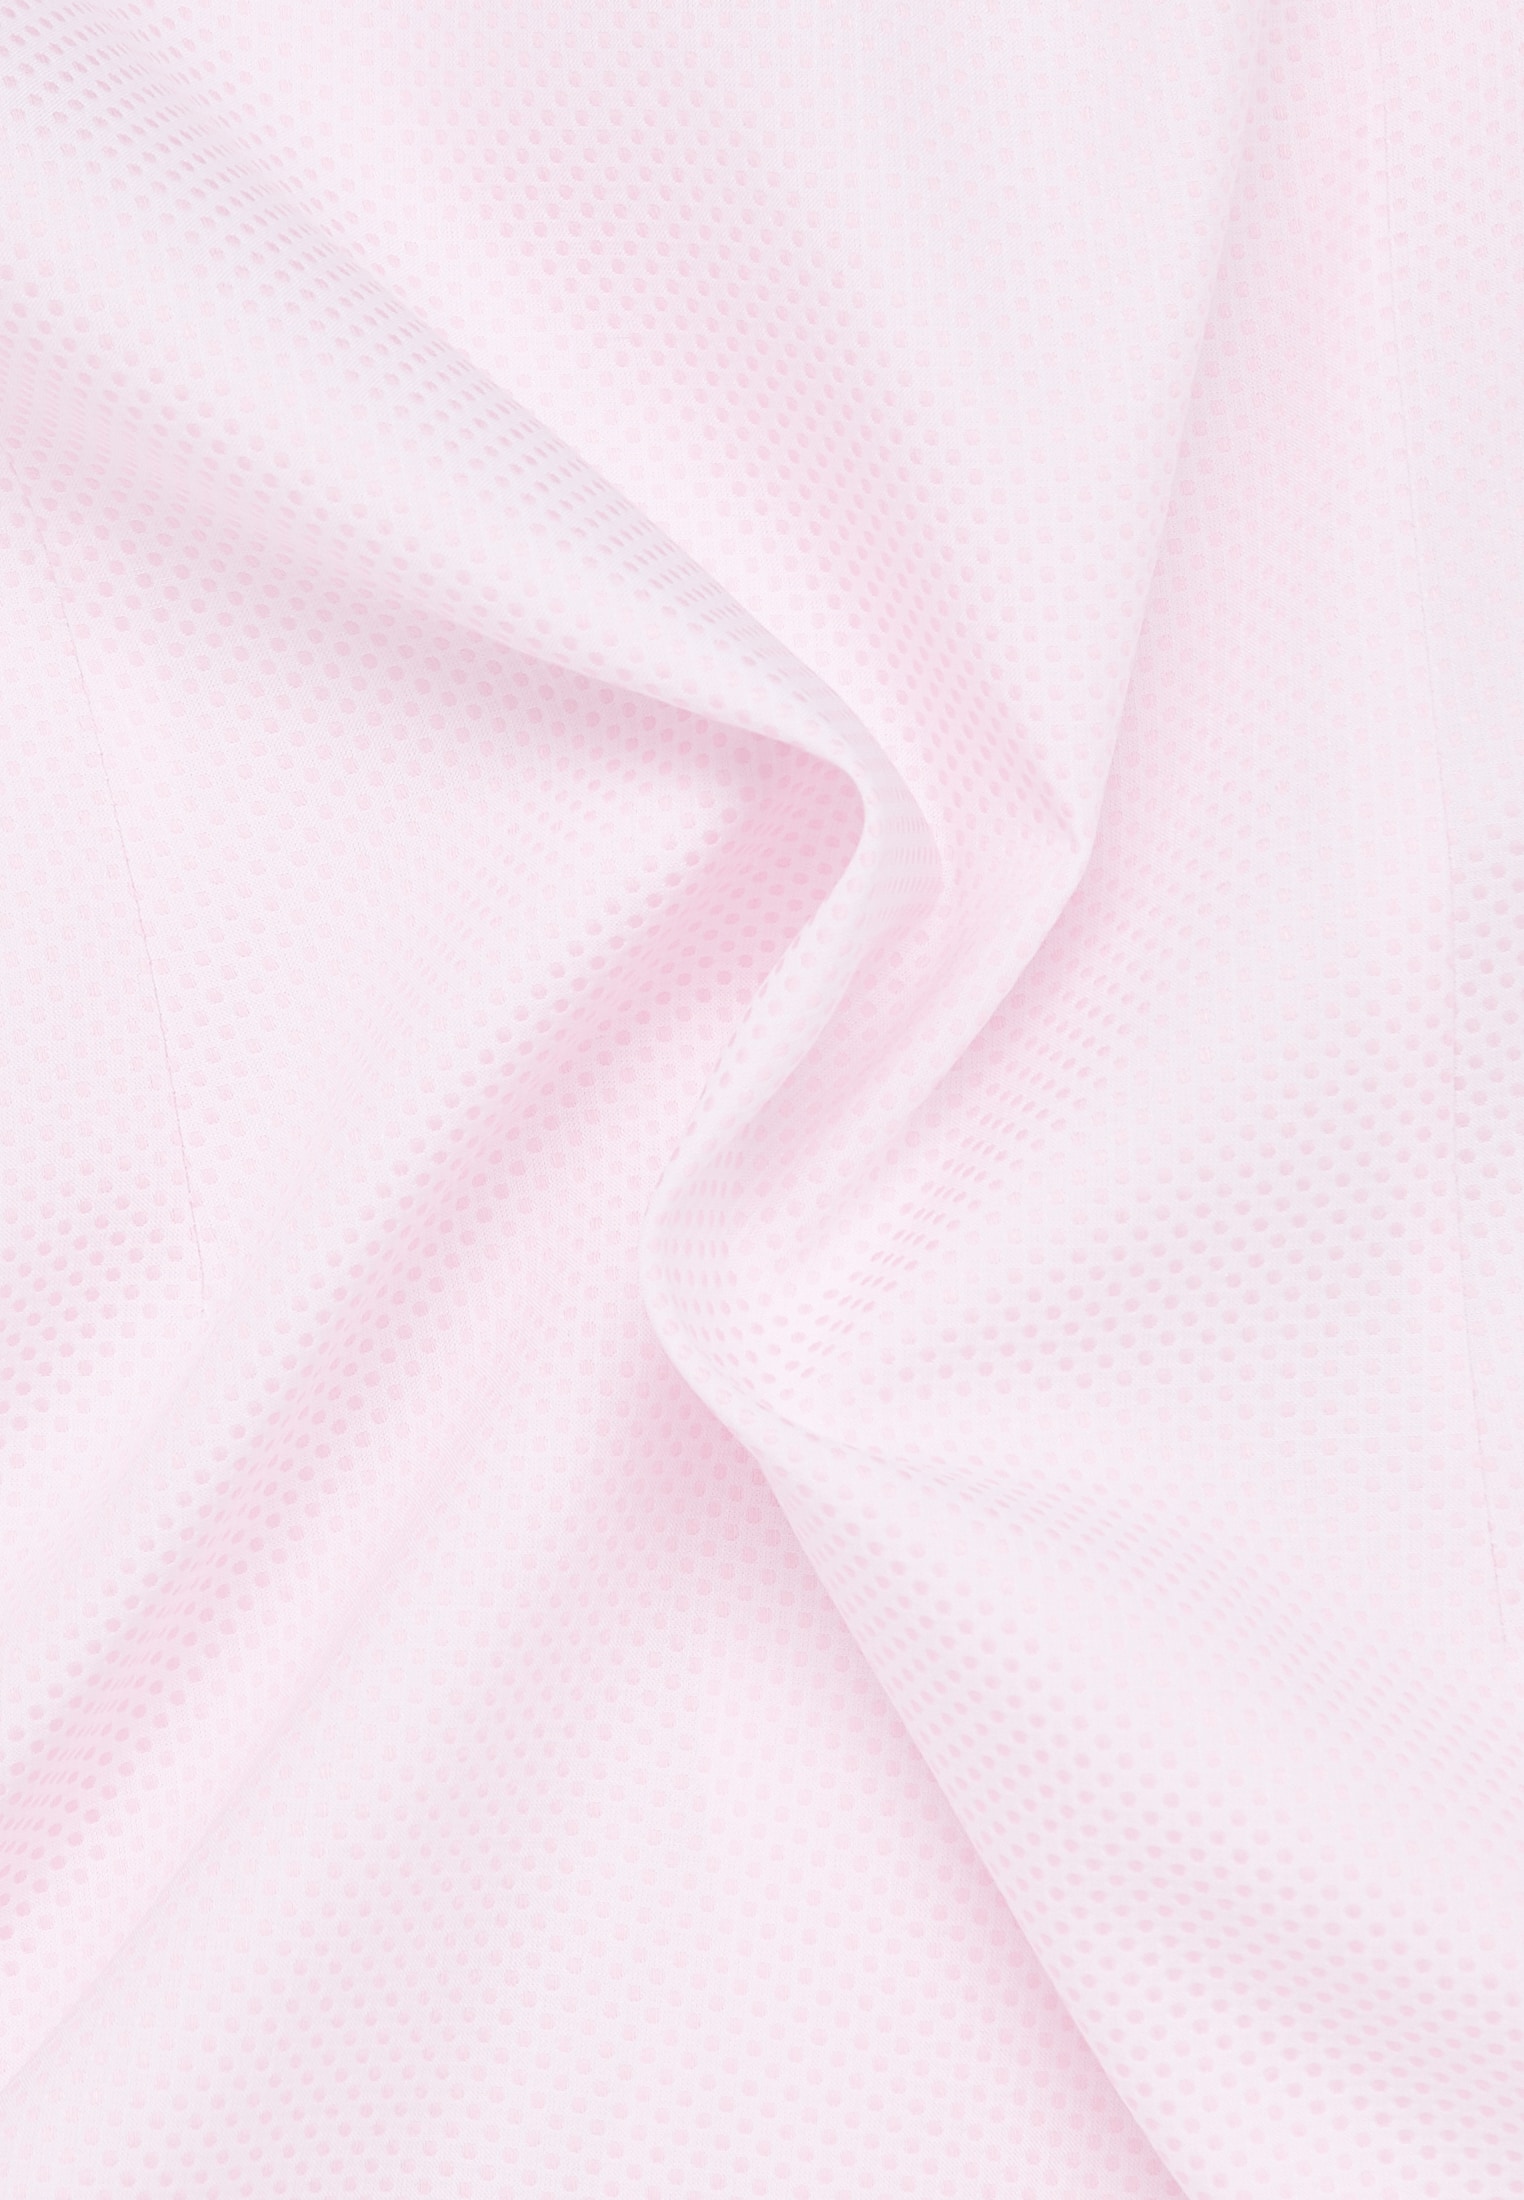 overhemdblouse in roze gestructureerd